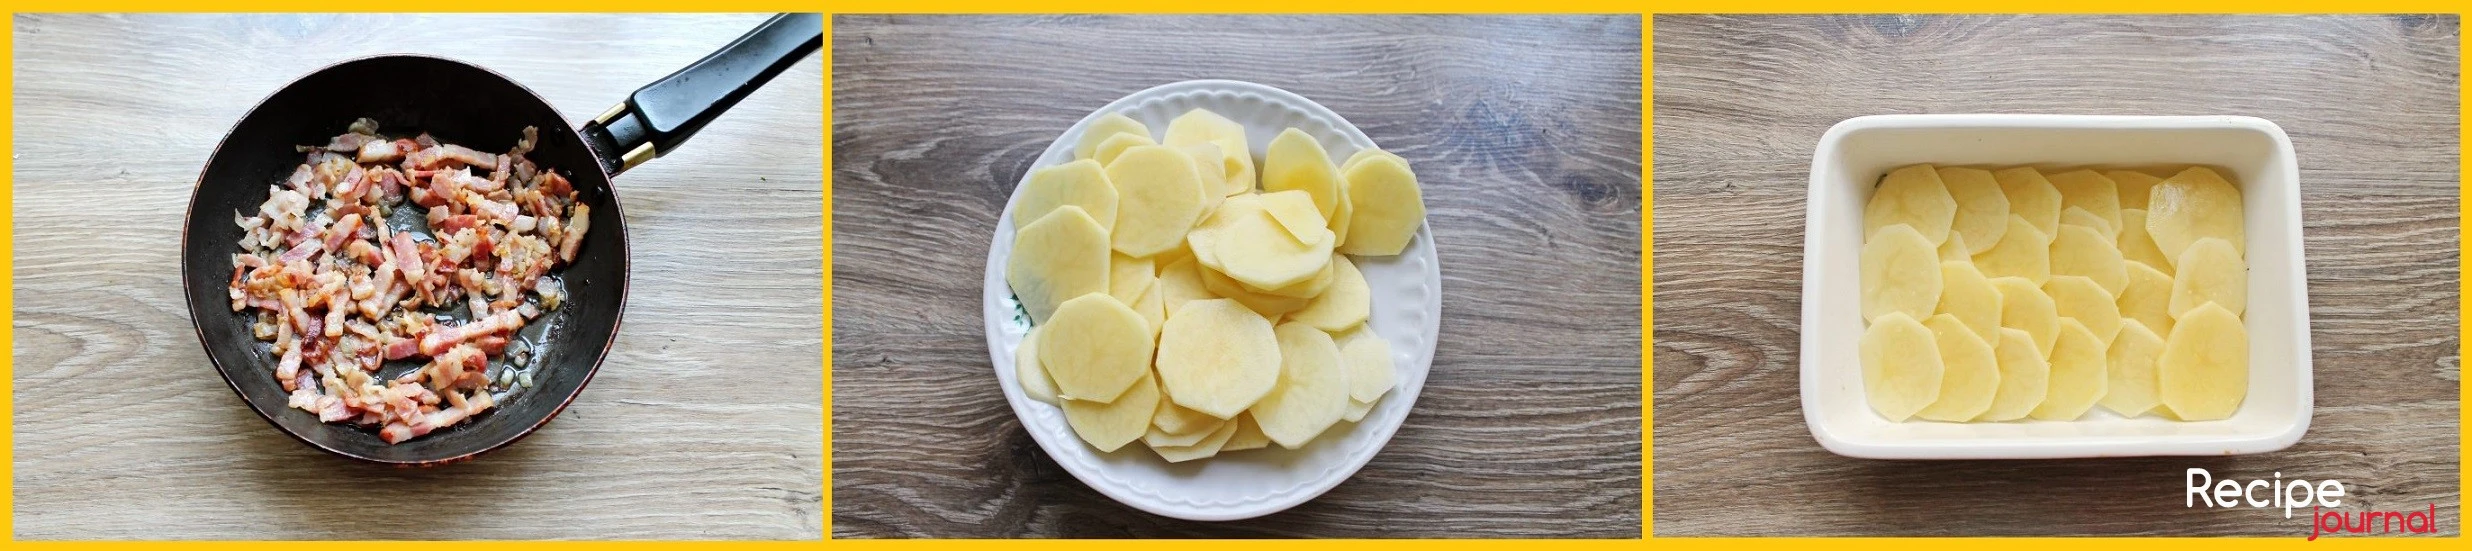 Обжариваем до прозрачности лука, минут 5. Очищенный картофель нарезаем тонкими слайсами. Количество ингредиентов рассчитано на форму для запекания 19*16 см. Картофель солим и выкладываем третью часть на дно формы, внахлест.